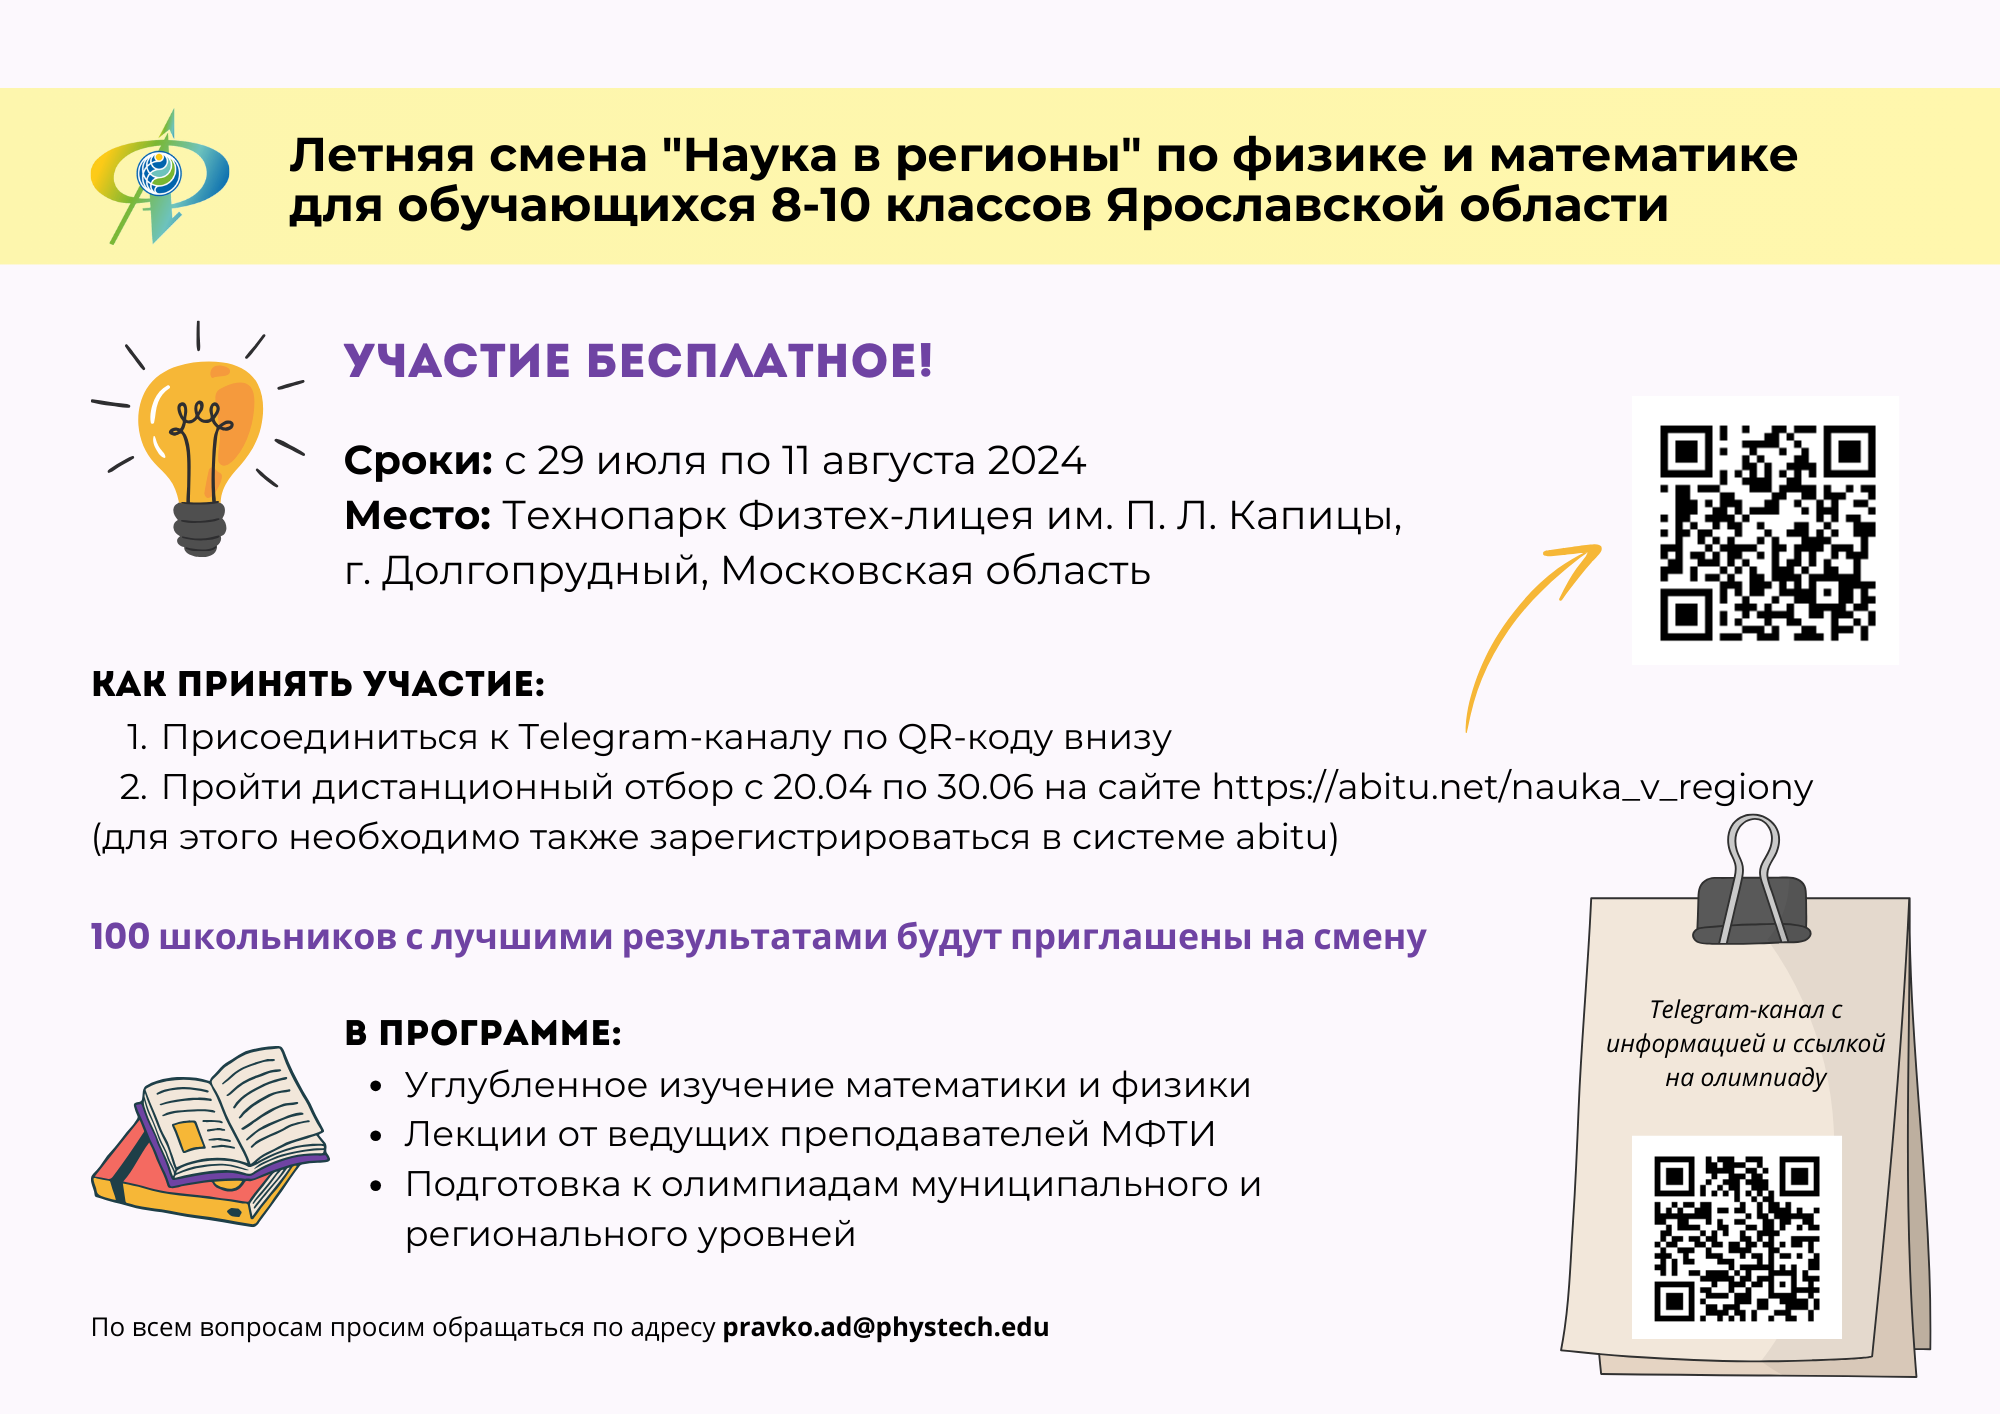 Приглашаем школьников Ярославской области принять участие в бесплатной летней смене «Наука в регионы»!